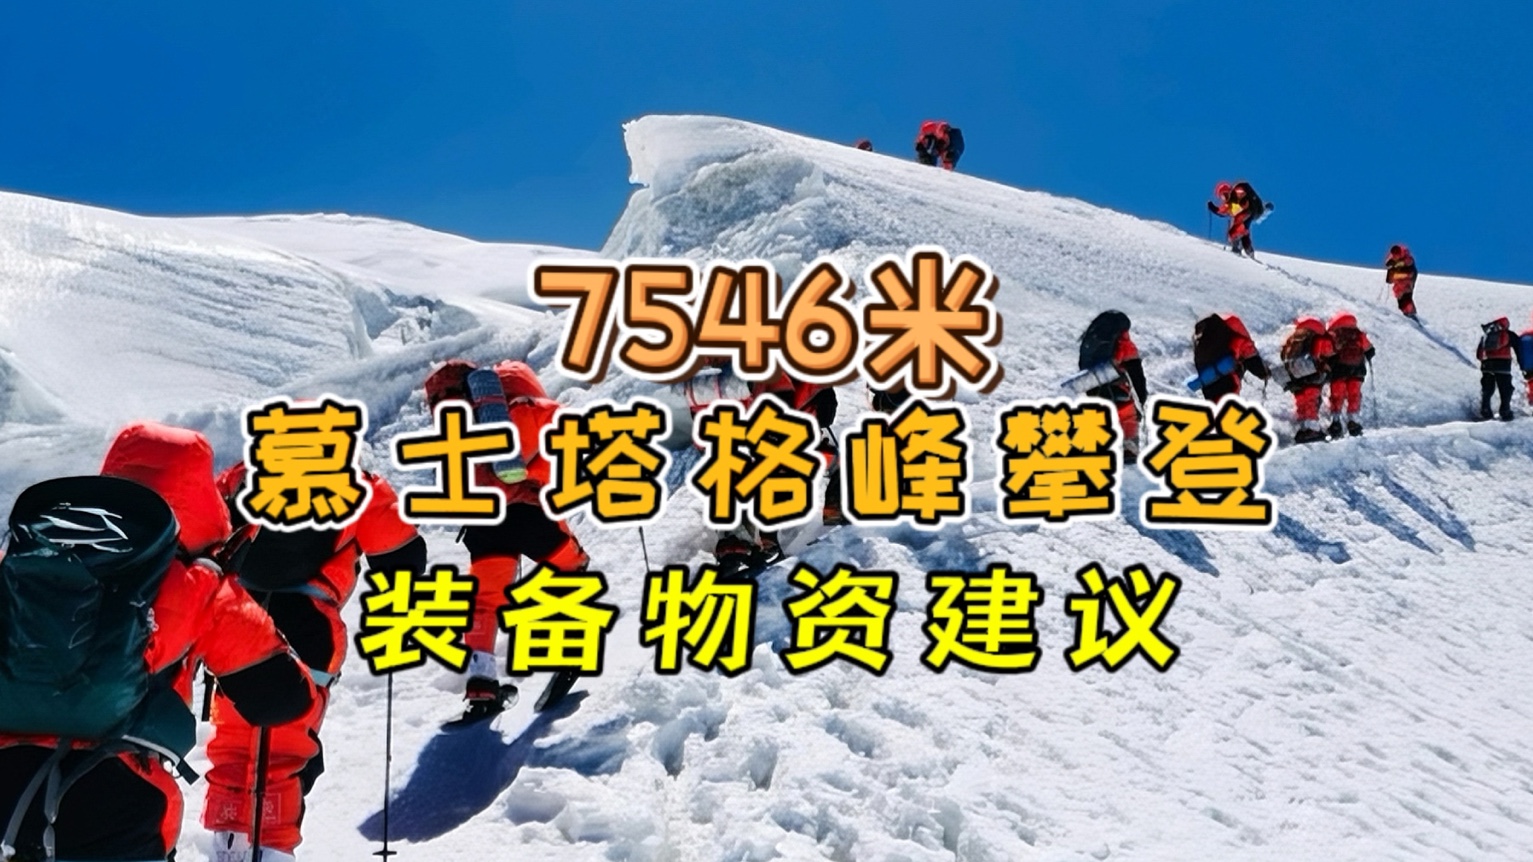 一条视频说清楚7546米慕士塔格攀登穿、睡、背、戴、用和吃六个方面的物资清单